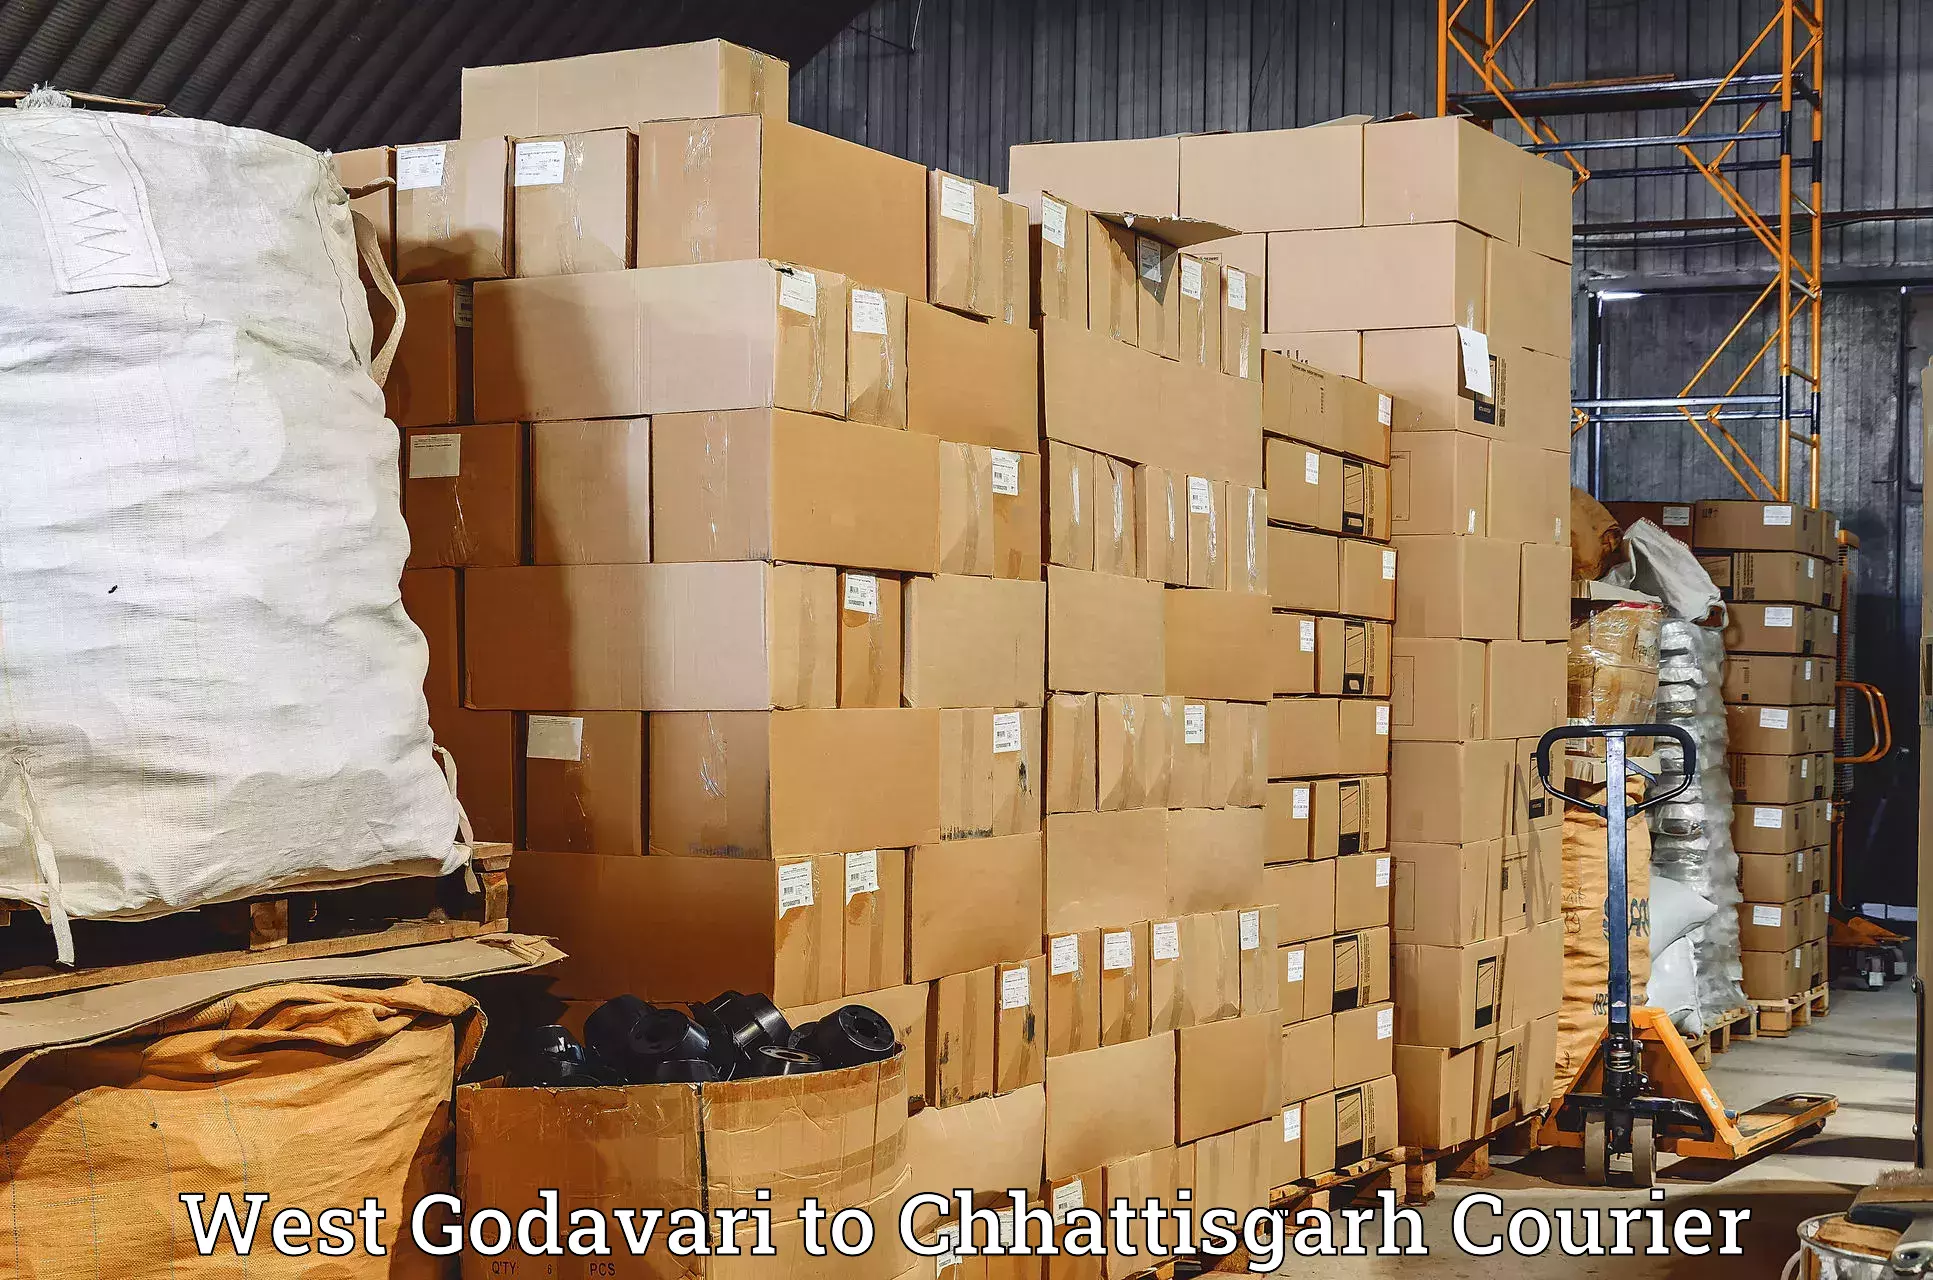 24-hour courier service West Godavari to Patna Chhattisgarh